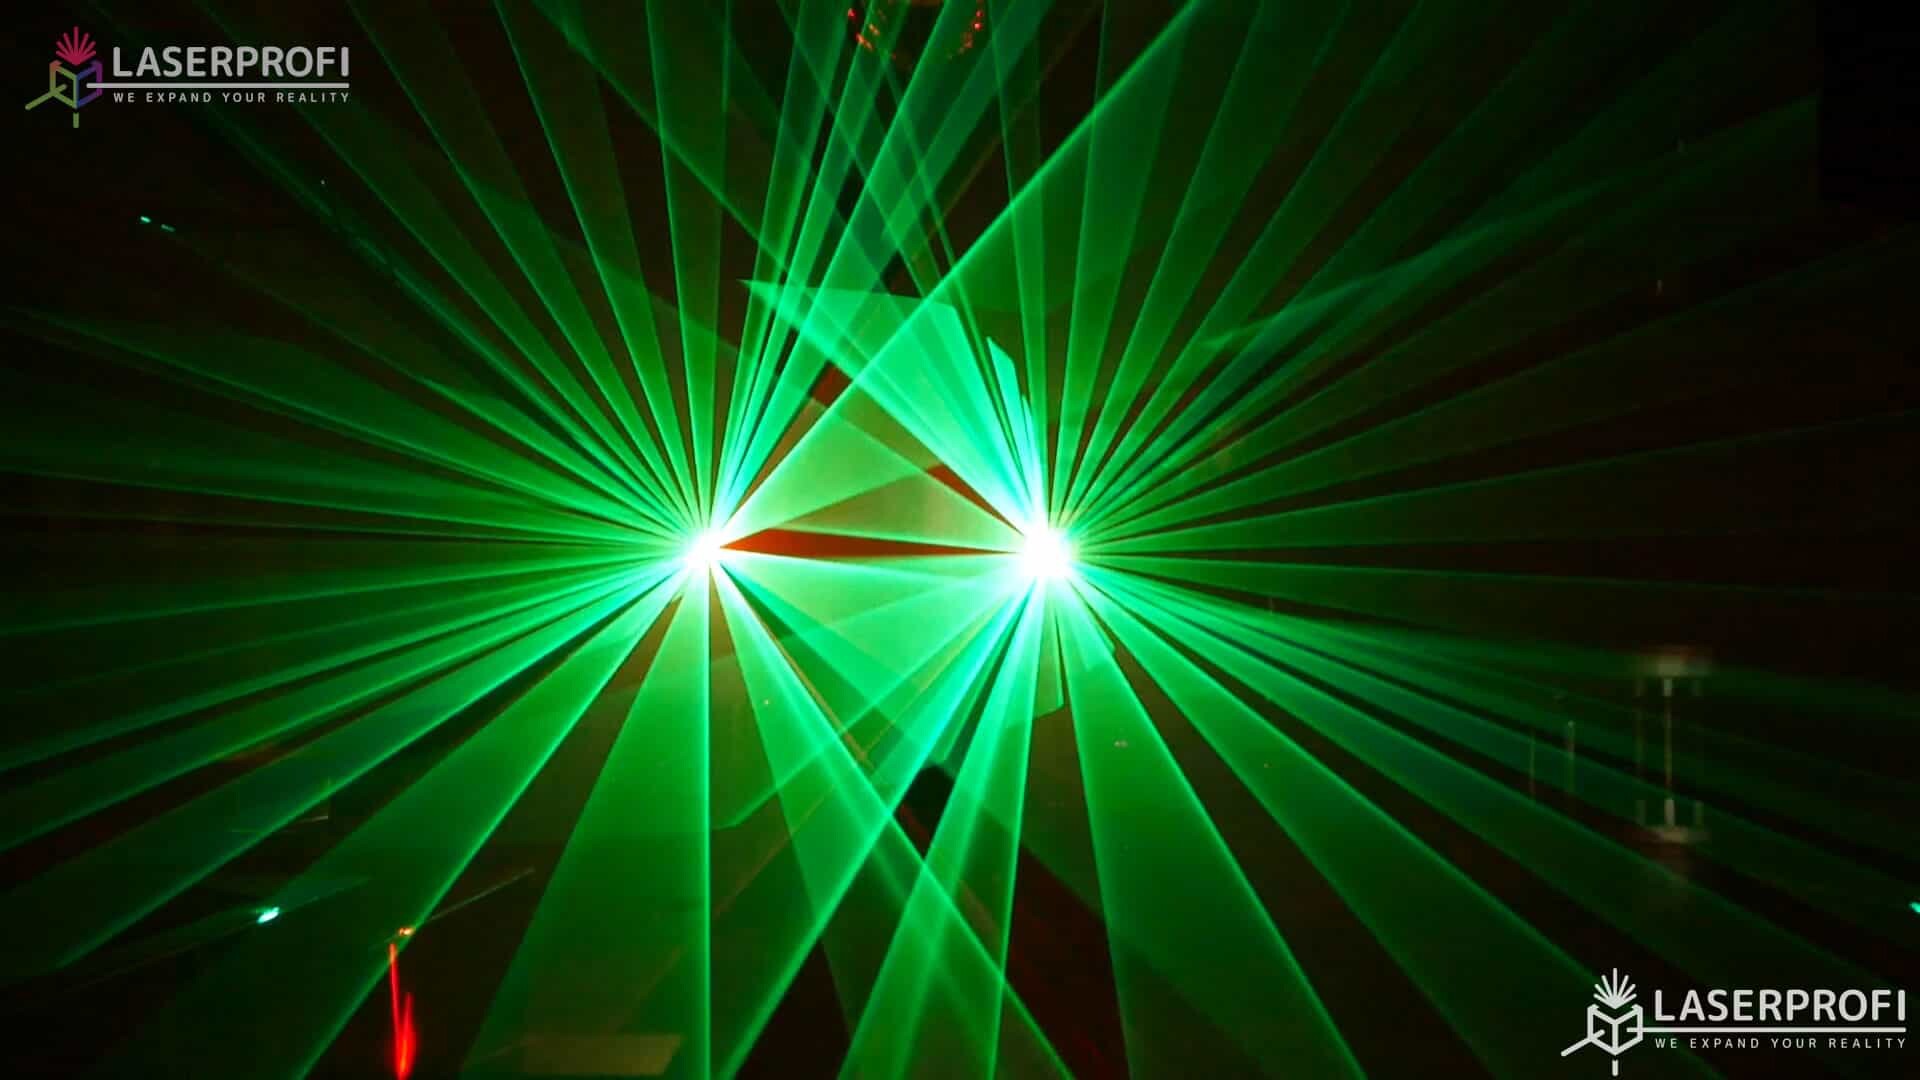 Przestrzenny pokaz laserowy zielone wachlarze laserowe